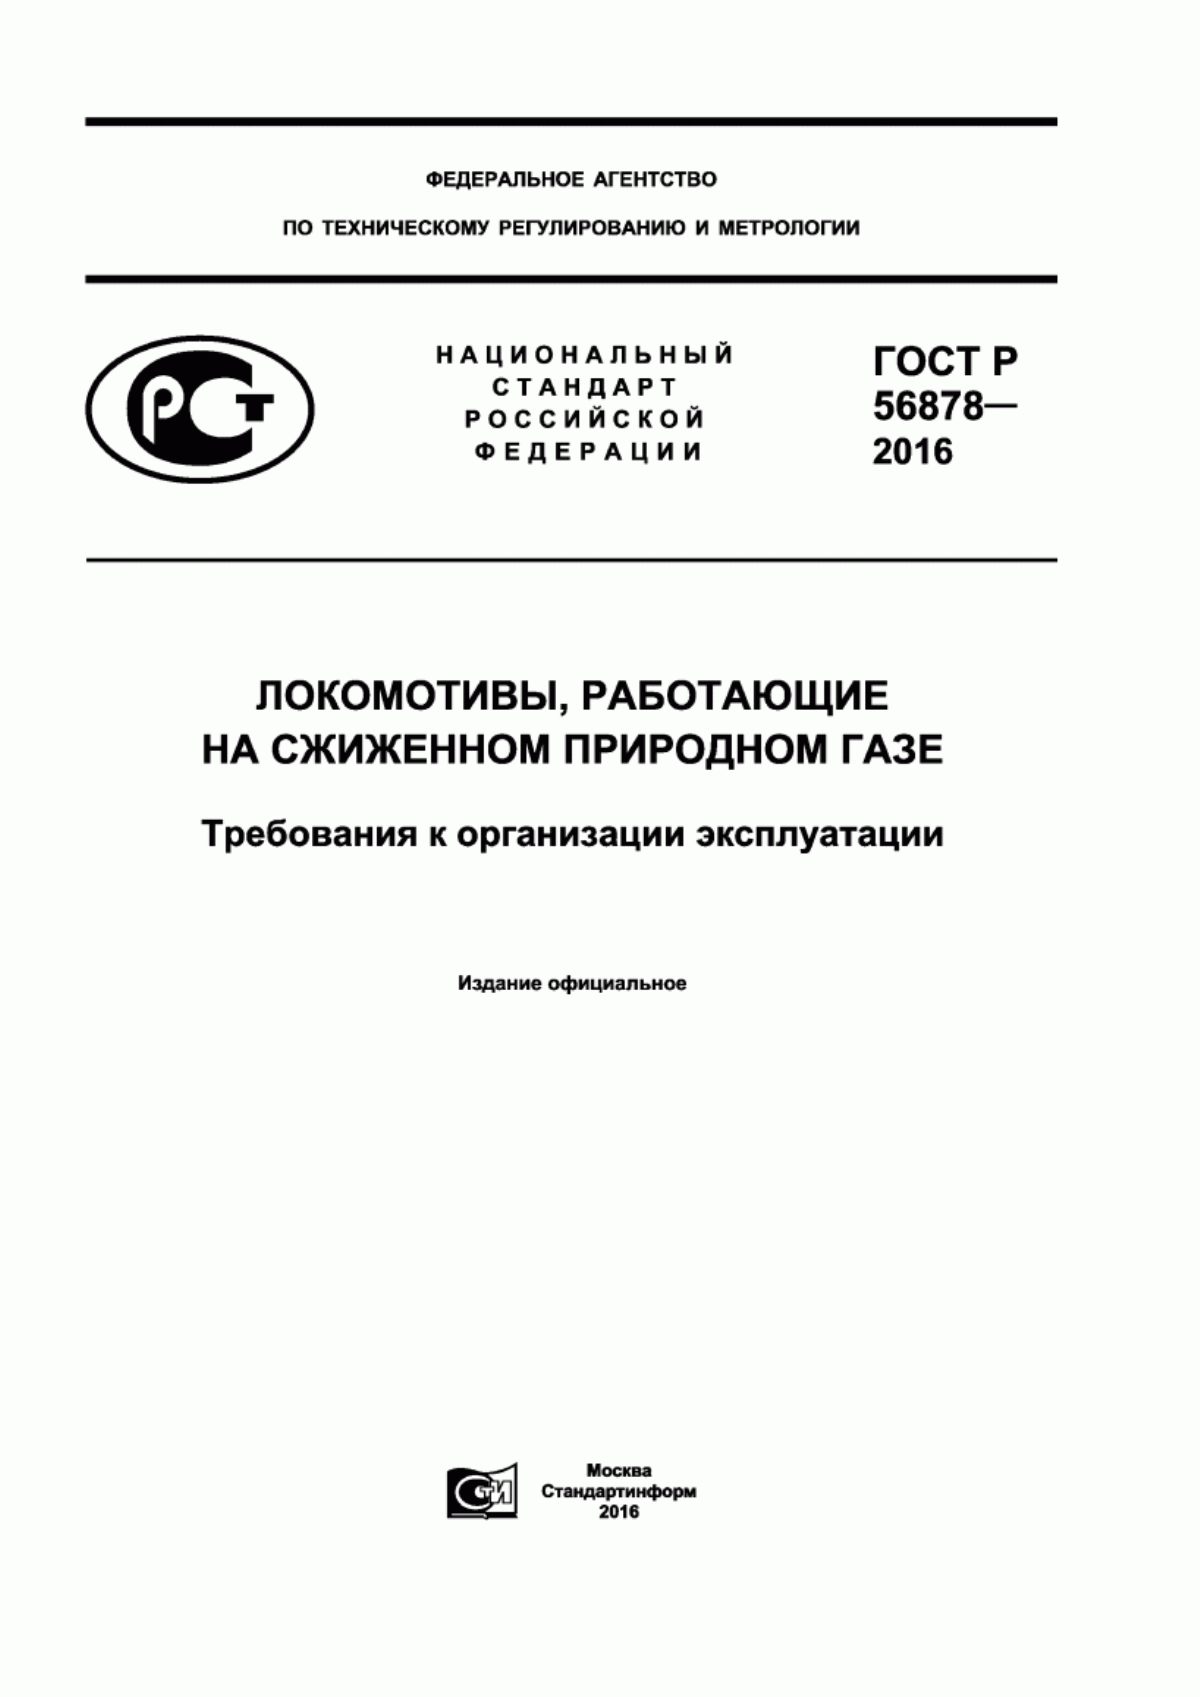 ГОСТ Р 56878-2016 Локомотивы, работающие на сжиженном природном газе. Требования к организации эксплуатации